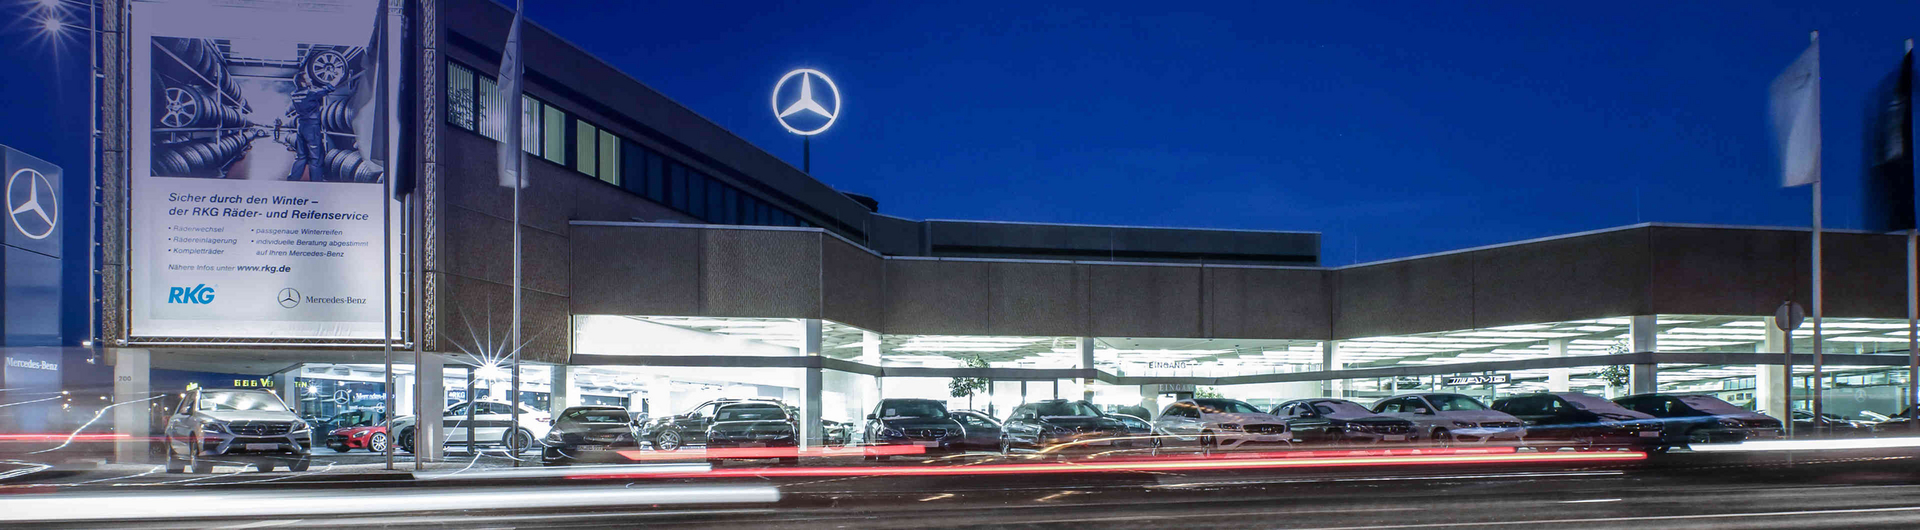 Wir sind die RKG - alle Geschäftsbereiche in der RKG finden Sie hier, von Mercedes-Benz bis zur Autovermietung in der Region